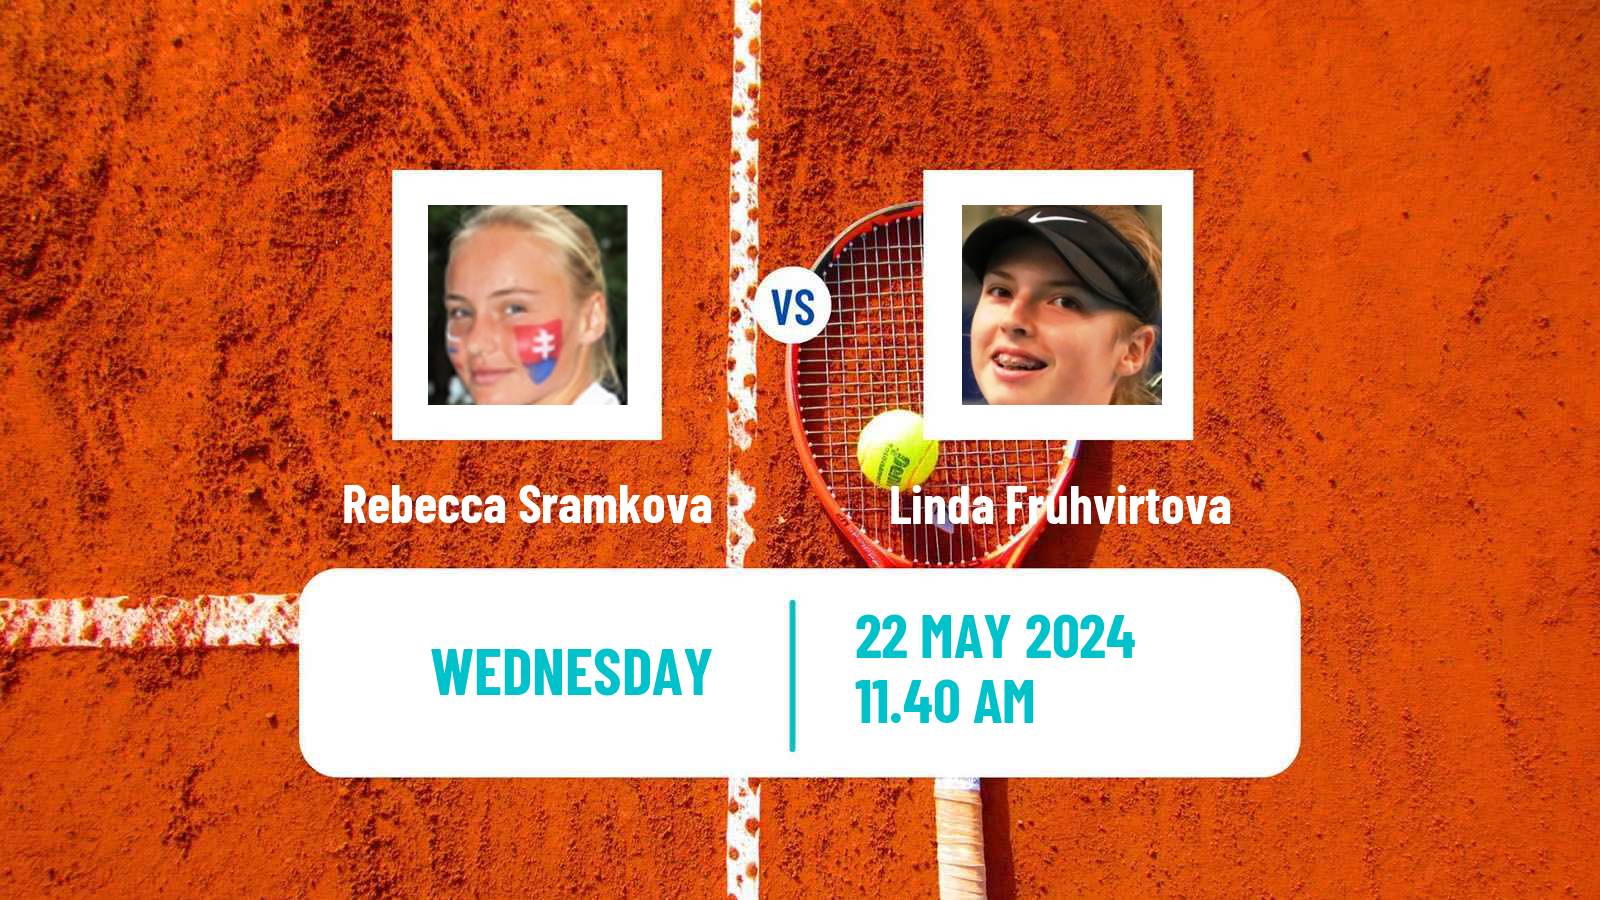 Tennis WTA Roland Garros Rebecca Sramkova - Linda Fruhvirtova